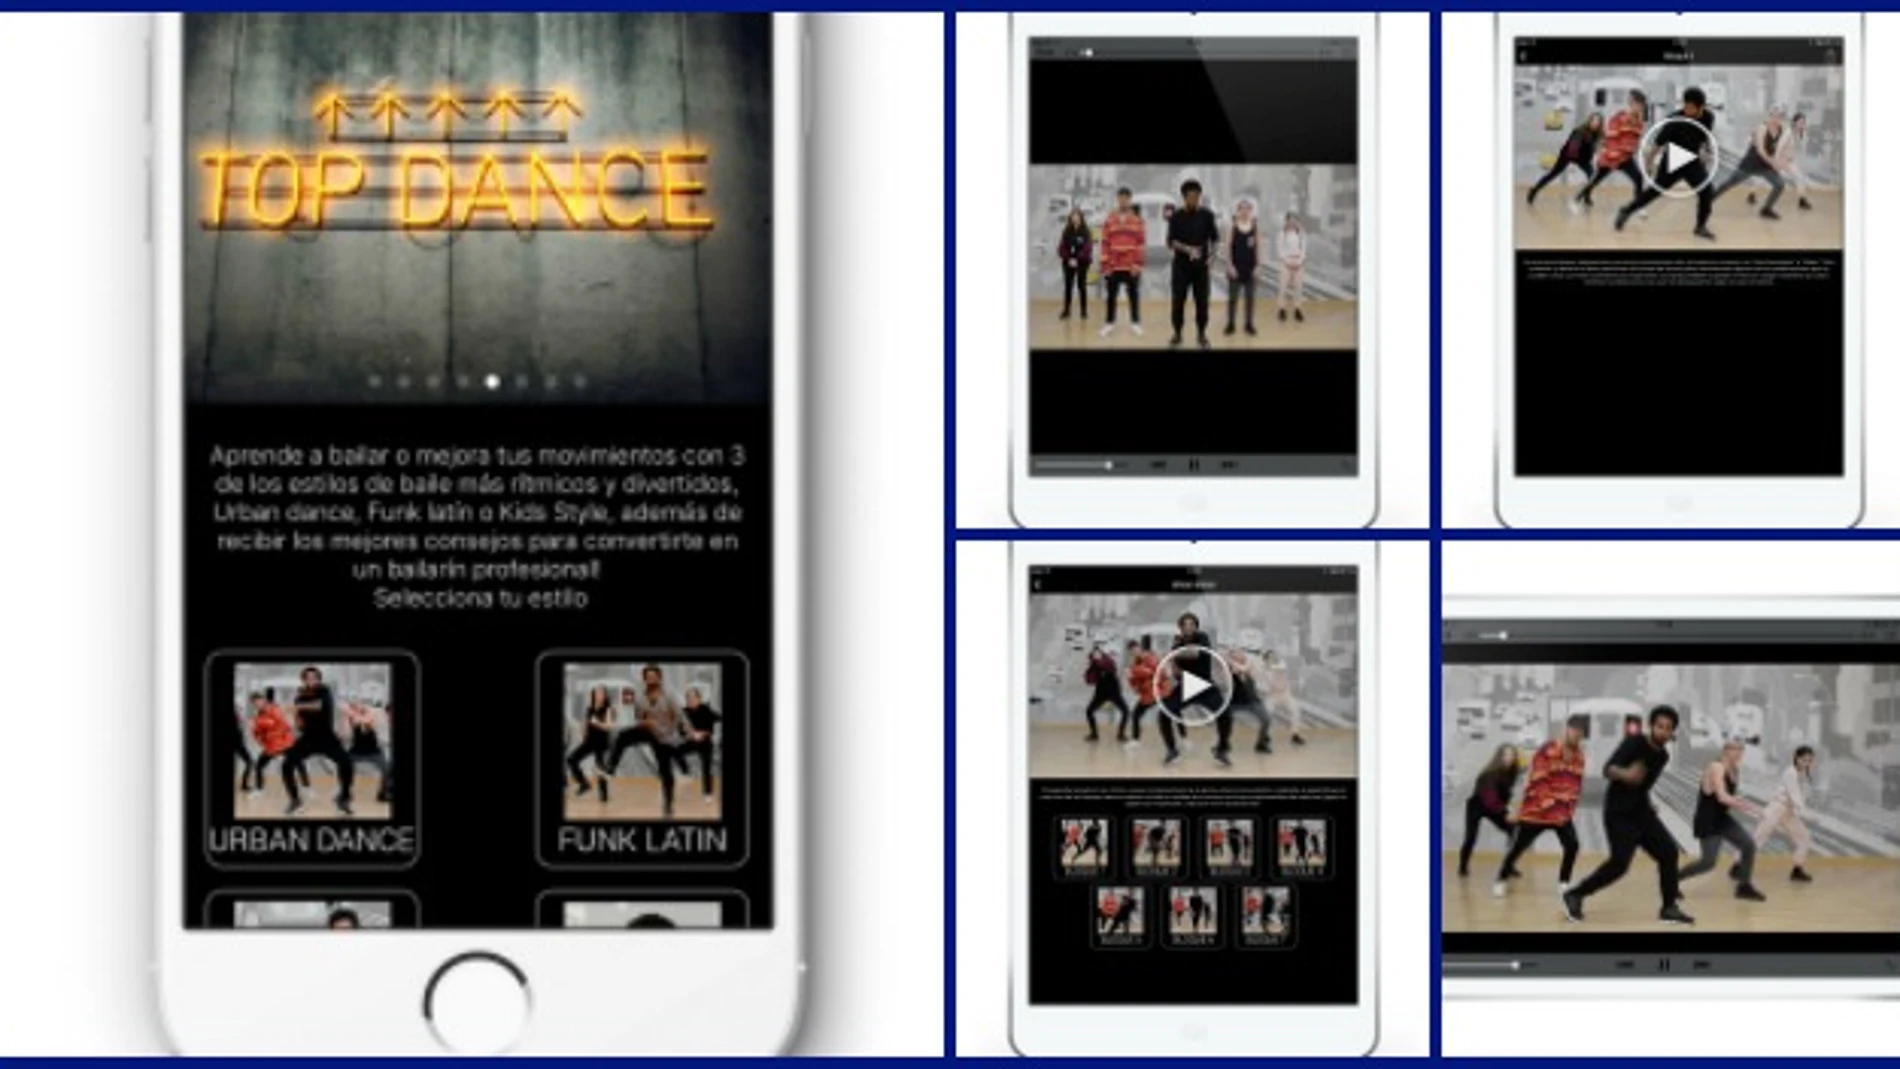 'Top Dance' lanza una ‘App’ para aprender a bailar